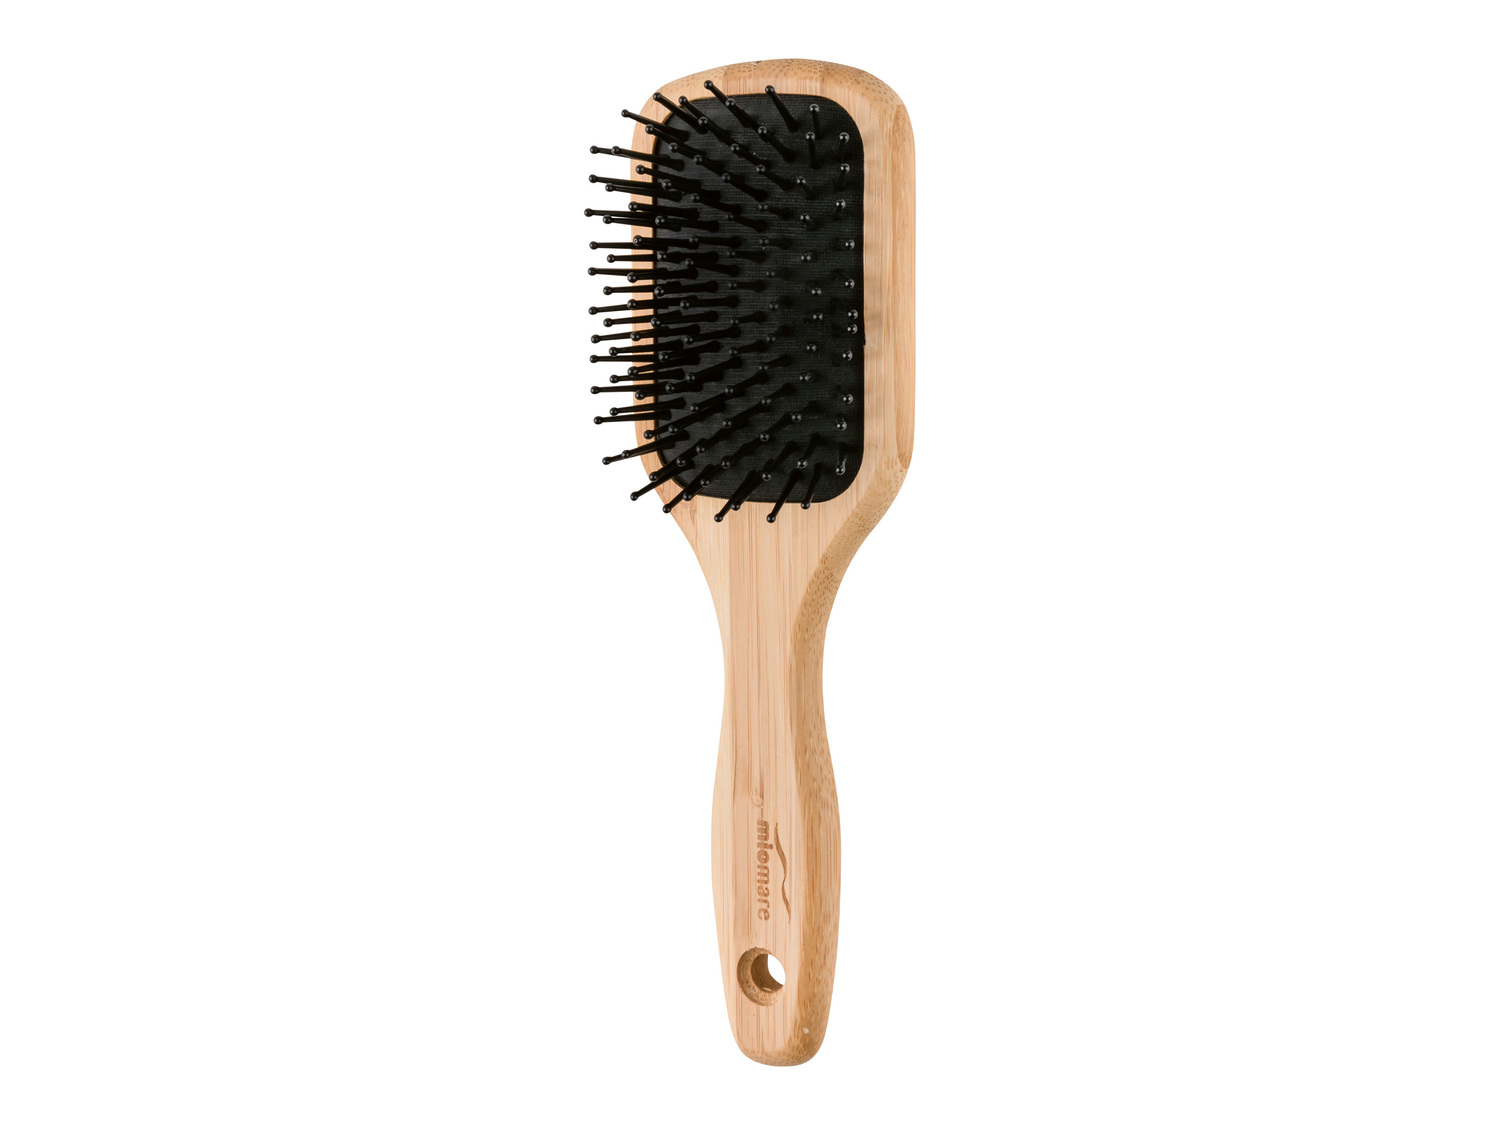 Spazzola per capelli in bambù Miomare, prezzo 3.99 &#8364;  

Caratteristiche